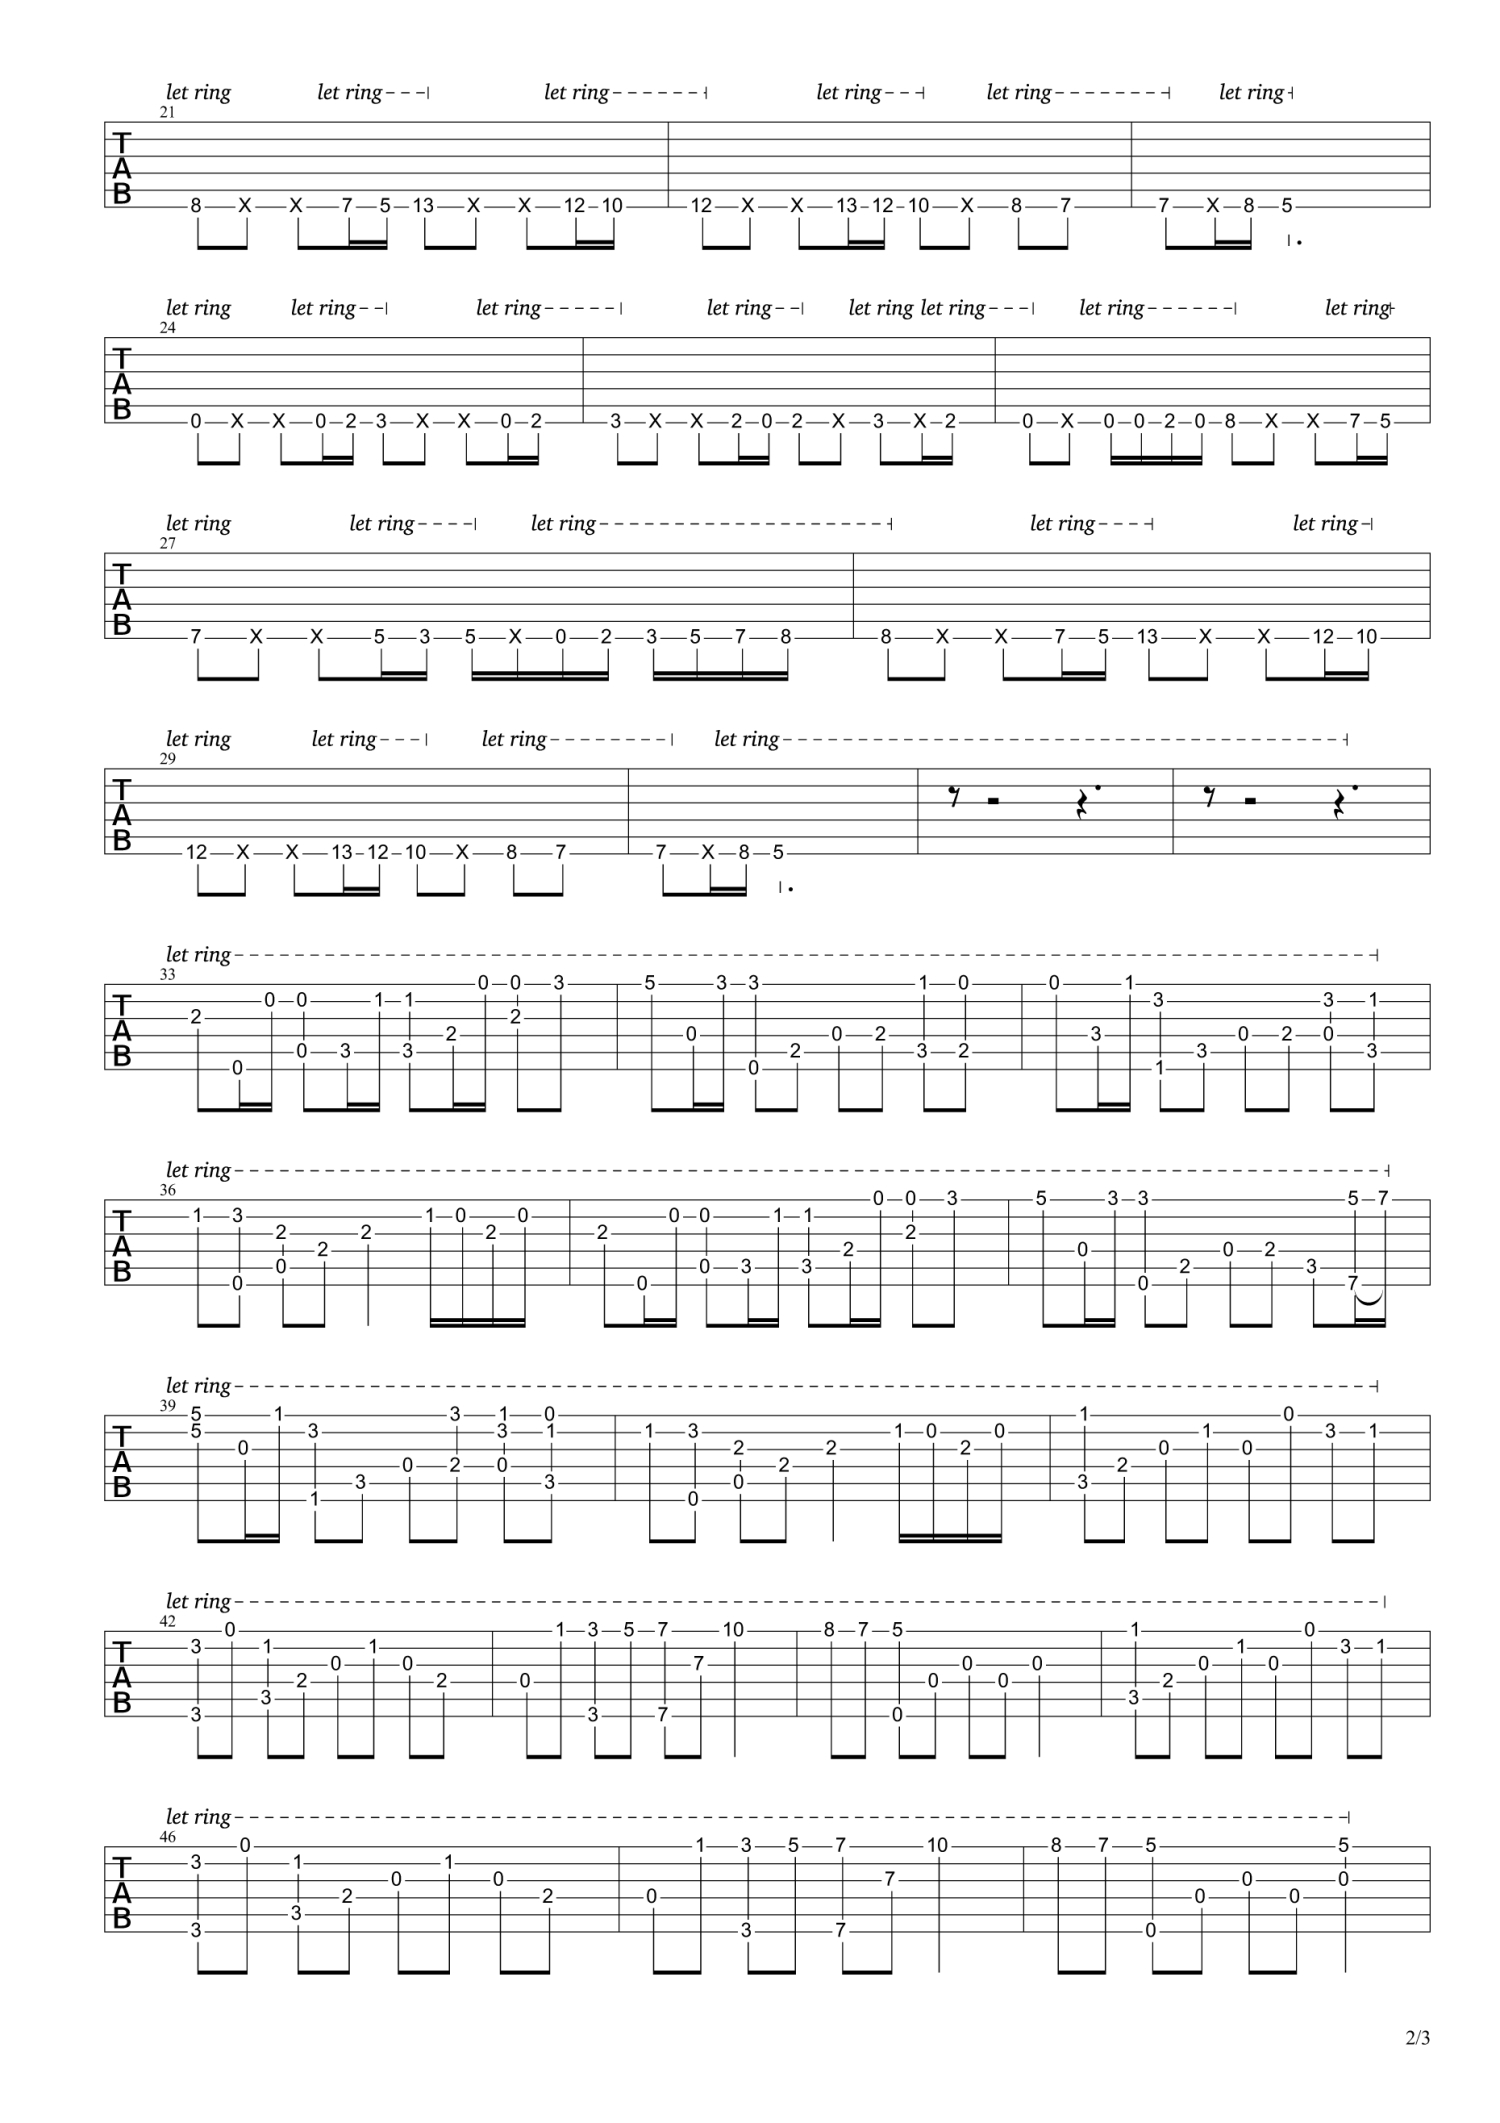 亡灵序曲钢琴曲的c调简谱，非常的好学简单-酸梅哈哈 - 弹琴吧